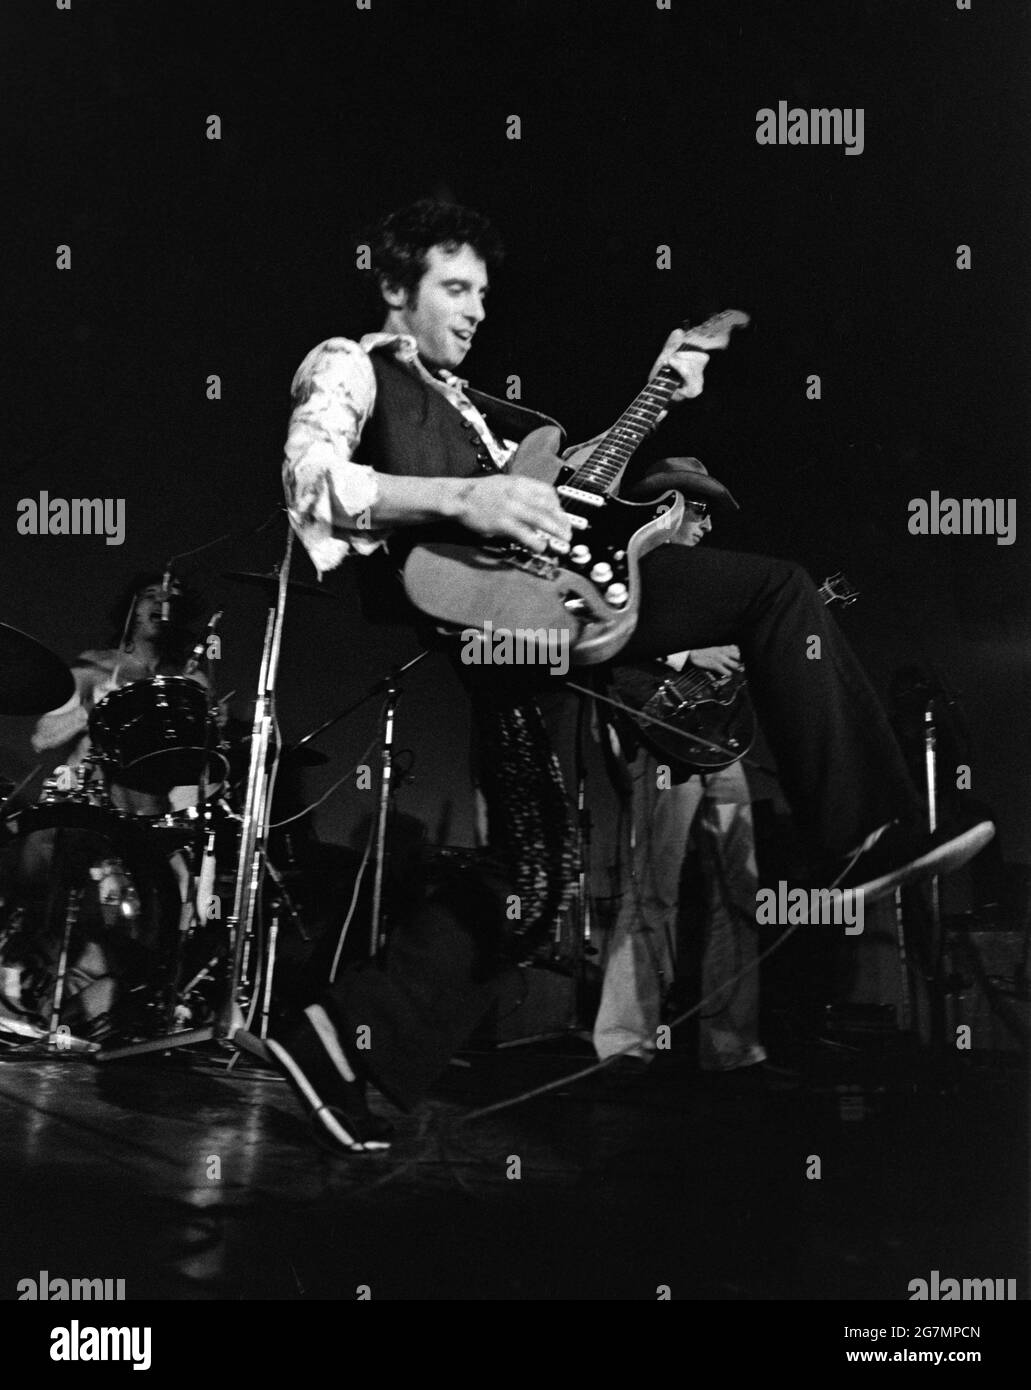 Nils Lofgren actúa en directo en Amsterdam, Países Bajos, 1975 (Foto de Gijsbert Hanekroot) Foto de stock